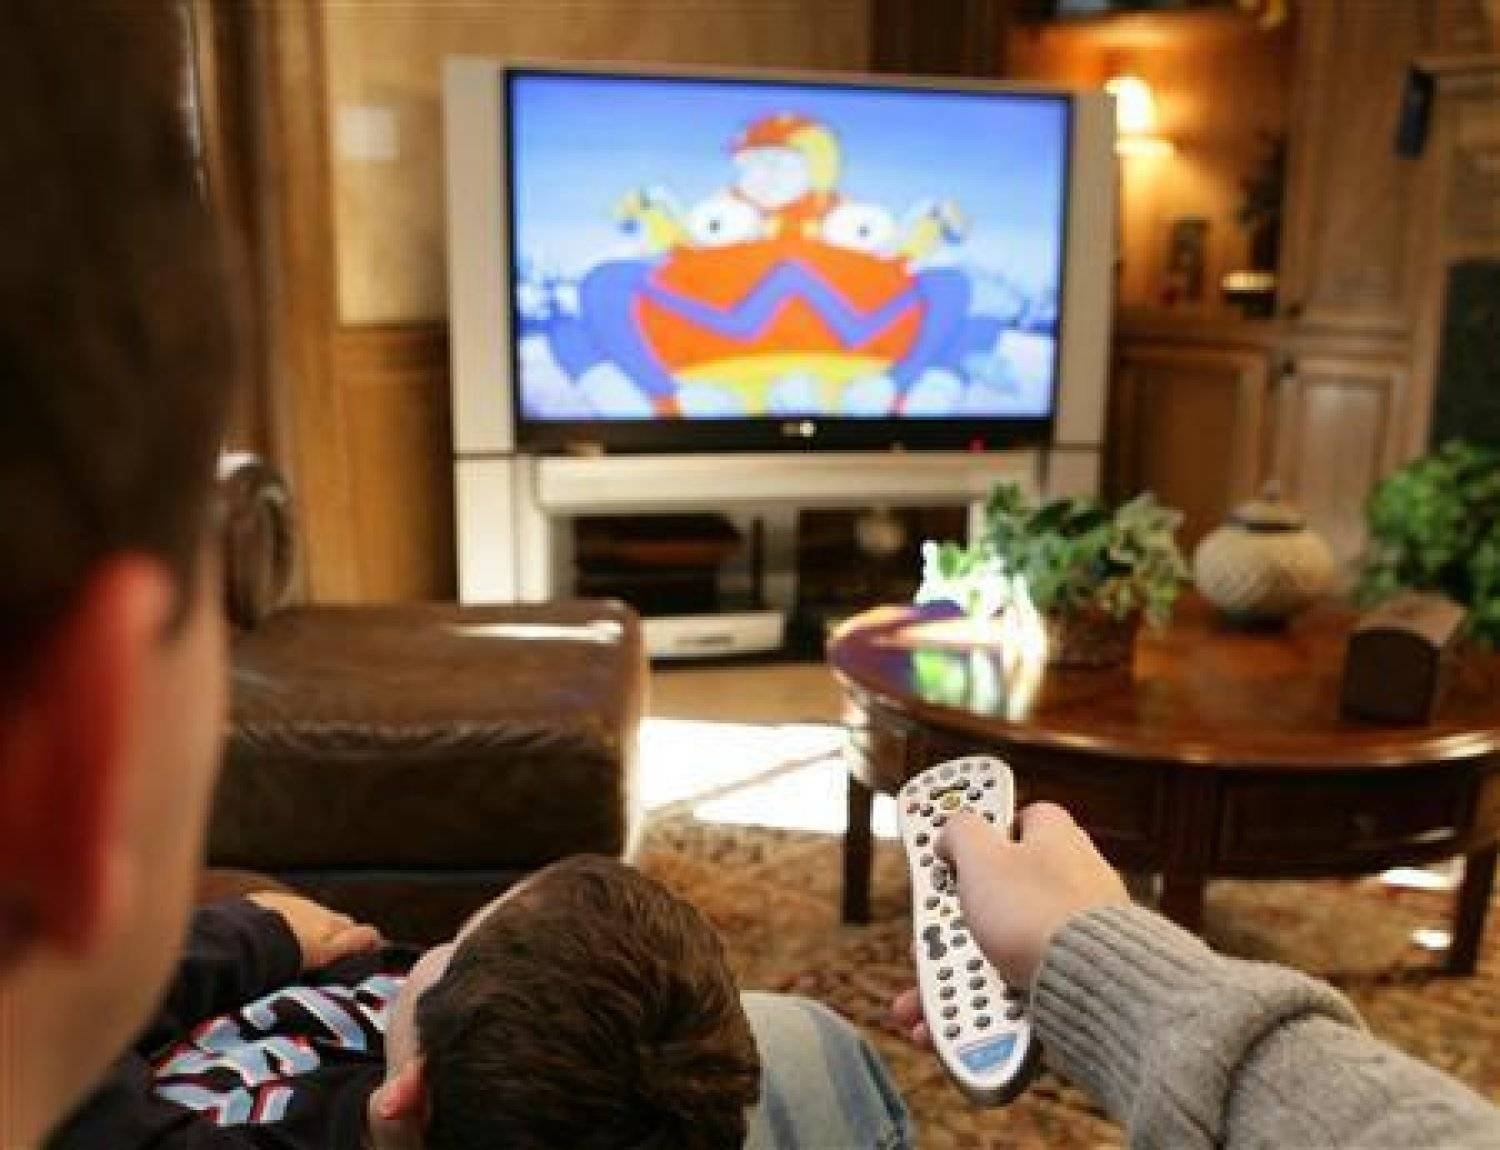 كيف تؤثر مشاهدة التلفزيون على صحتك مع تقدمك في العمر؟